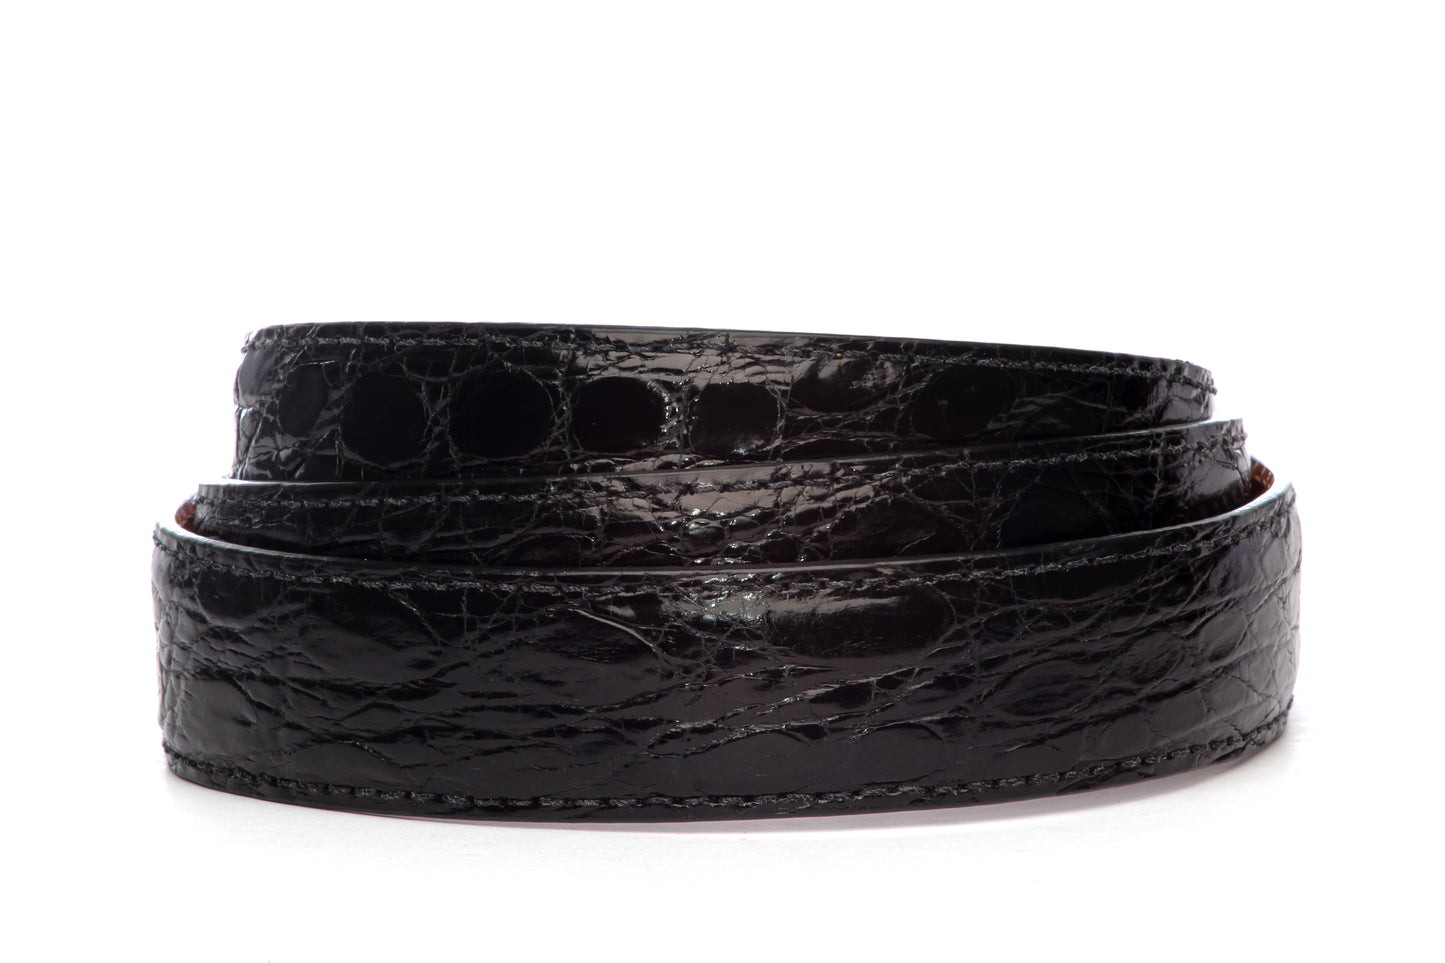 Men's crocodile belt strap in black with a 1.25-inch width, formal look